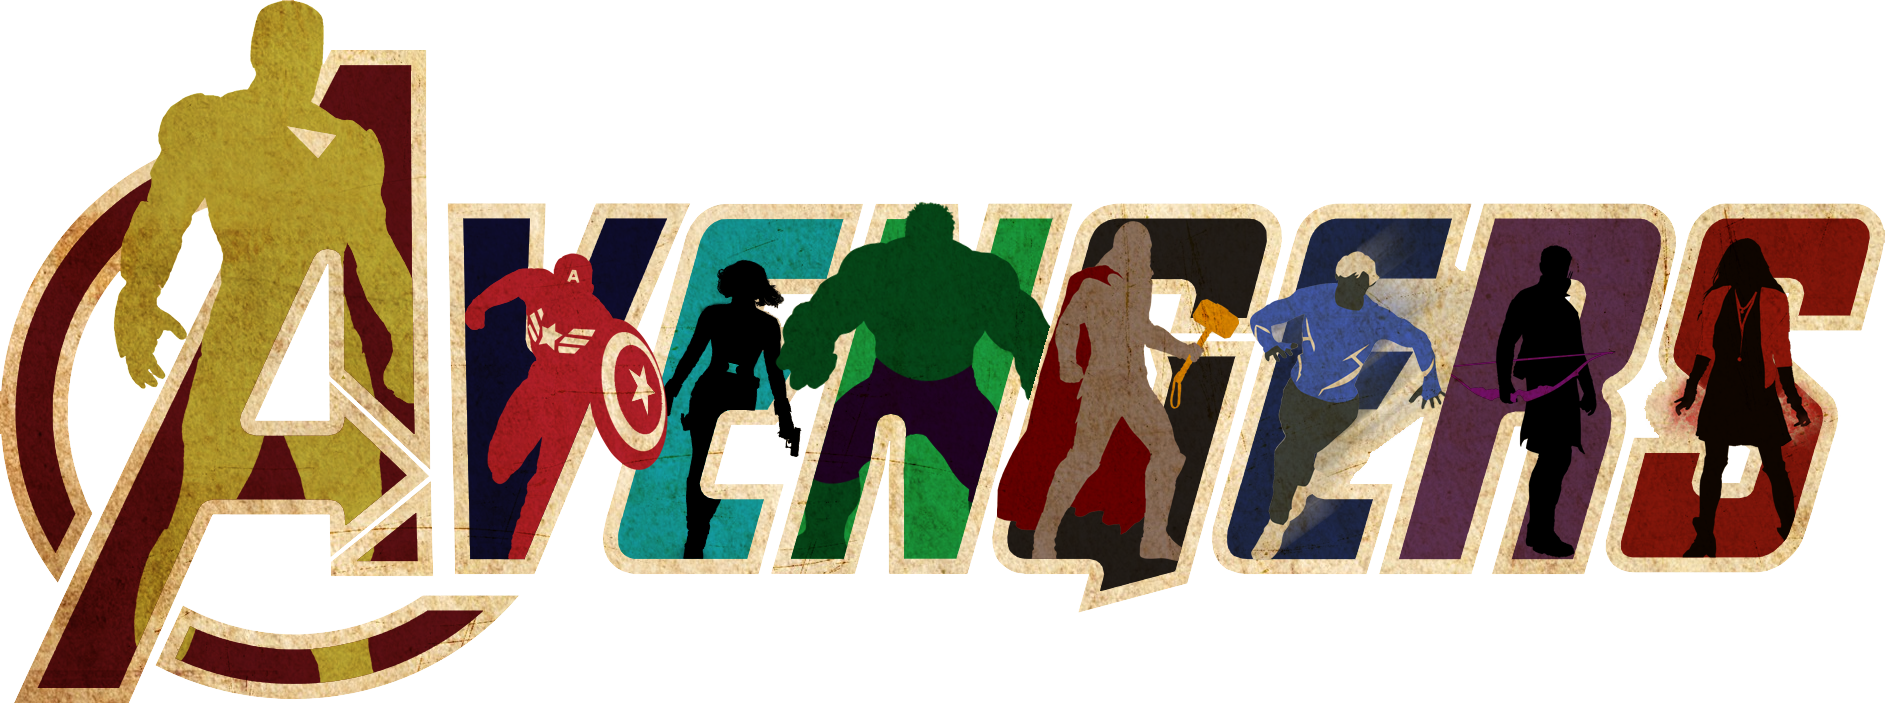 avengers media logo png #4983